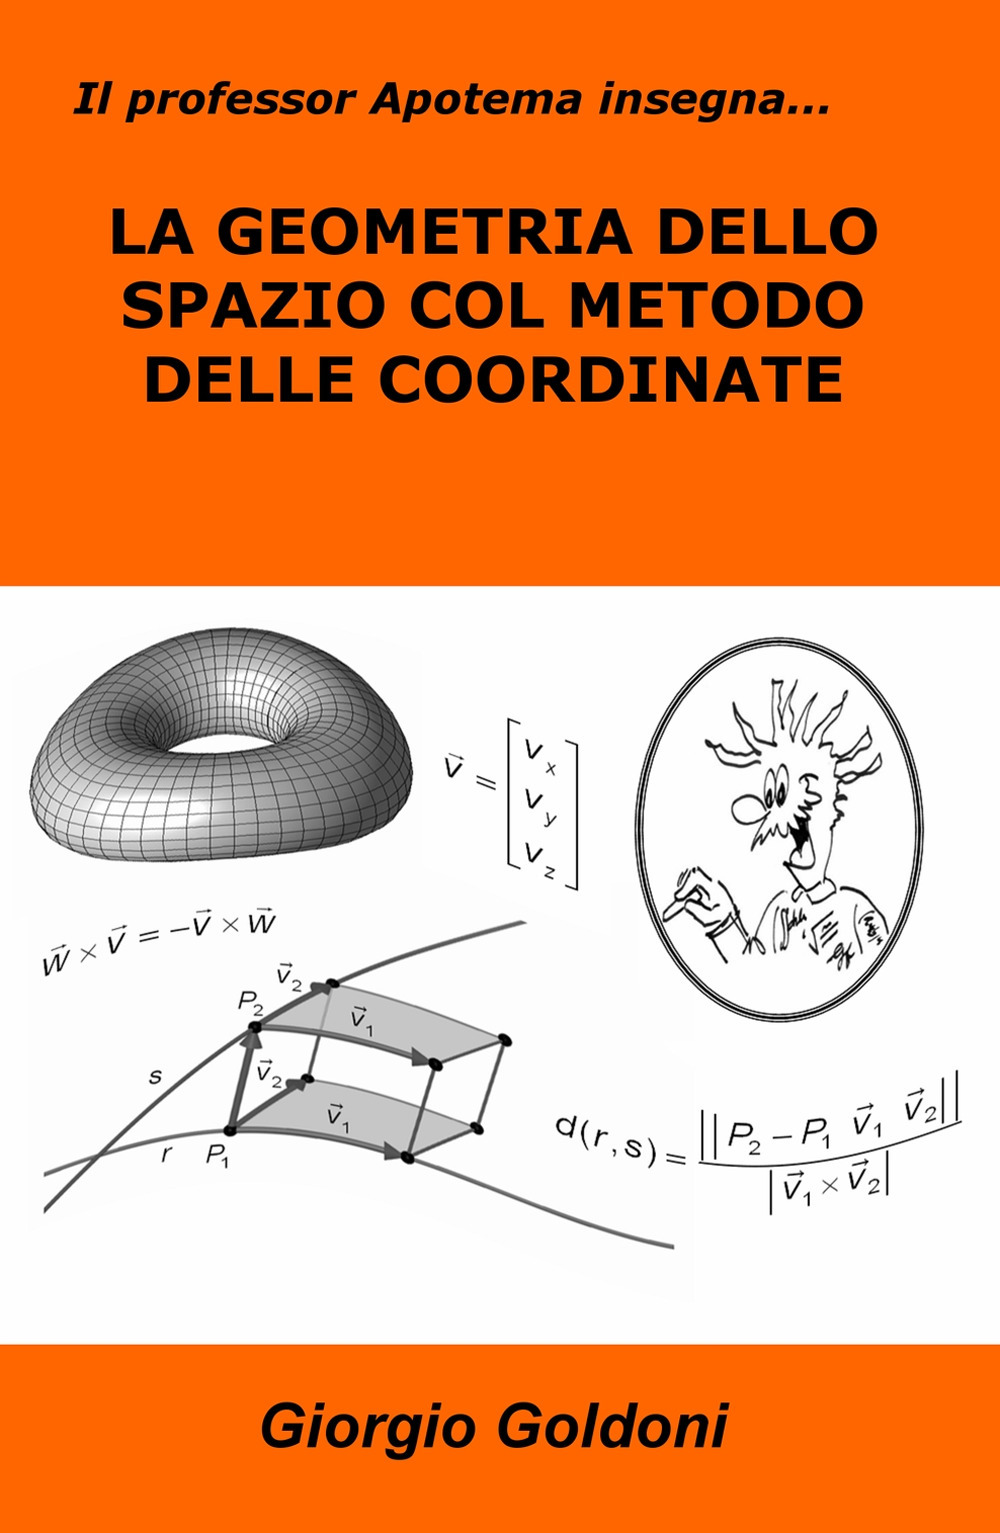 Image of Il professor Apotema insegna... la geometria dello spazio con il metodo delle coordinate